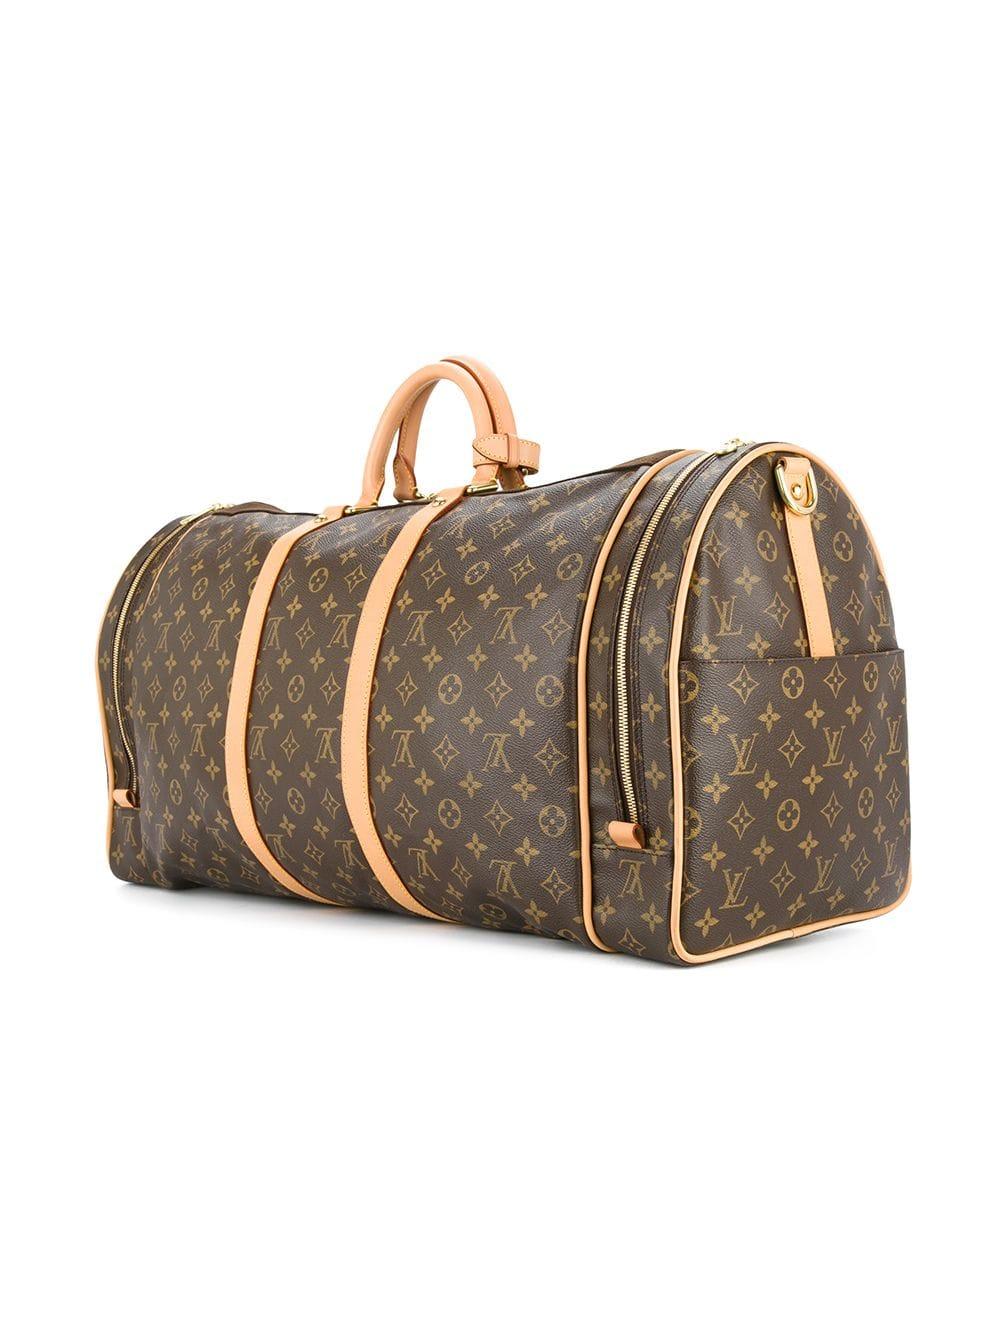 Louis Vuitton Monogram Travel Men's Women's Top Handle Weekender Duffle Bag für Damen oder Herren